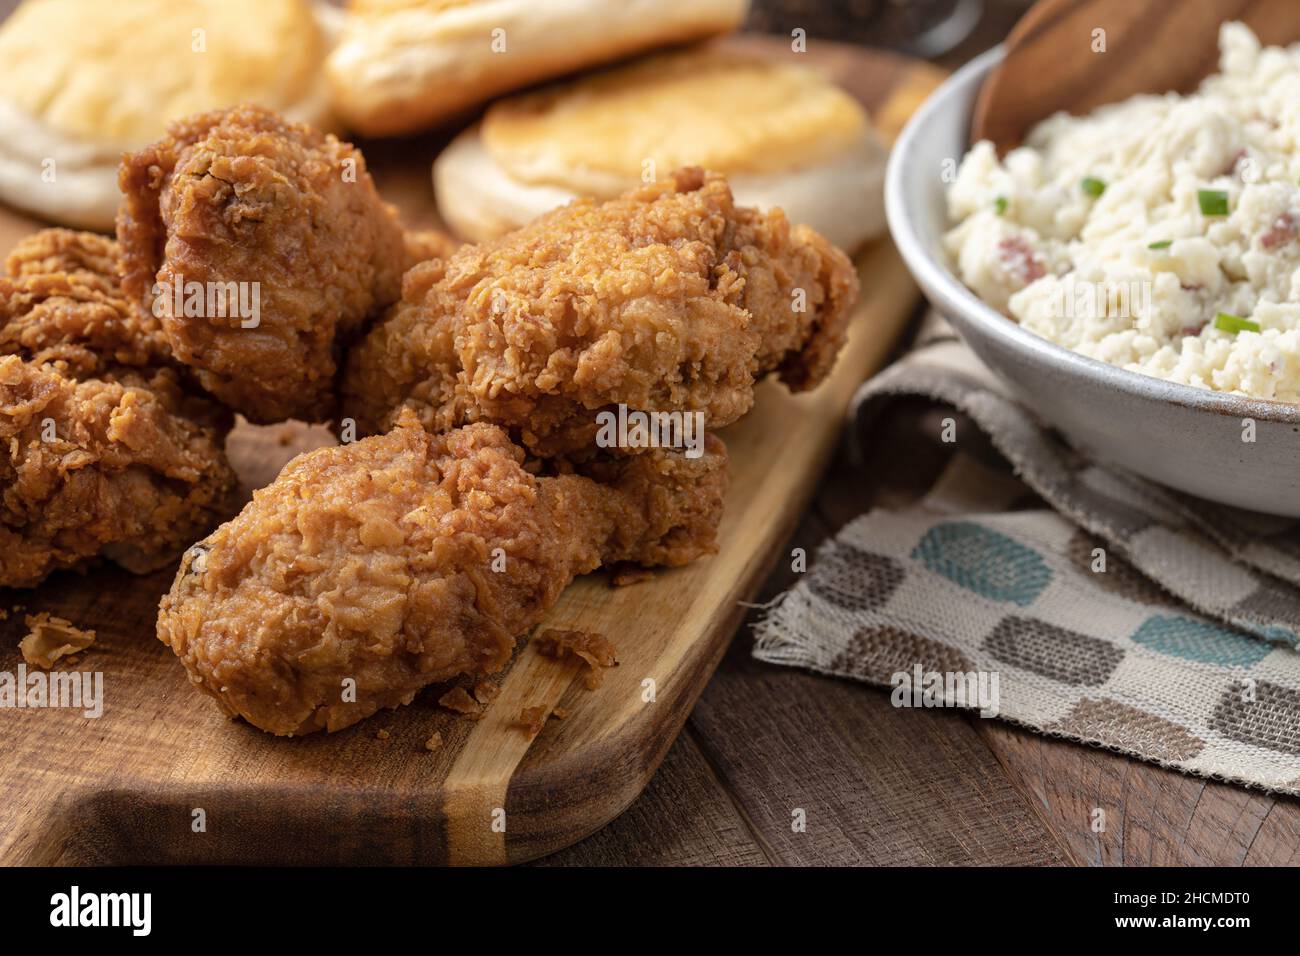 Cena con coscia e coscia di pollo fritto con biscotti e purè di patate su un rustico tavolo in legno Foto Stock